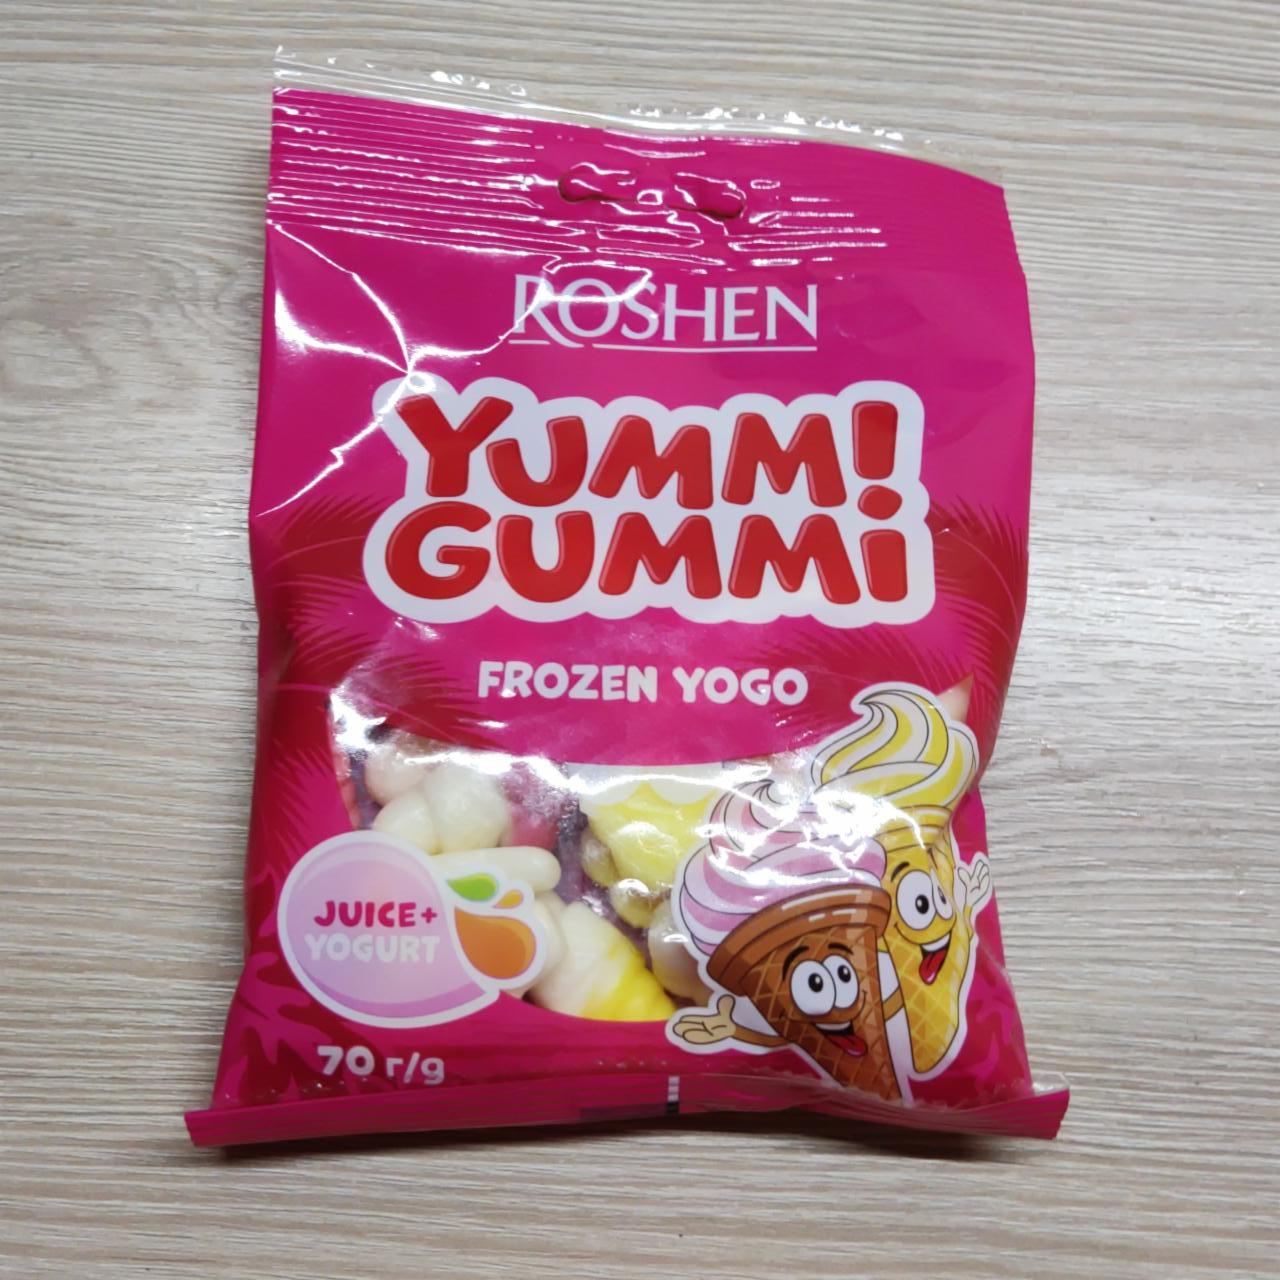 Képek - Roshen Yummi Gummi Frozen Yogo gyümölcs és joghurt ízesítésű gumicukorkák 70 g